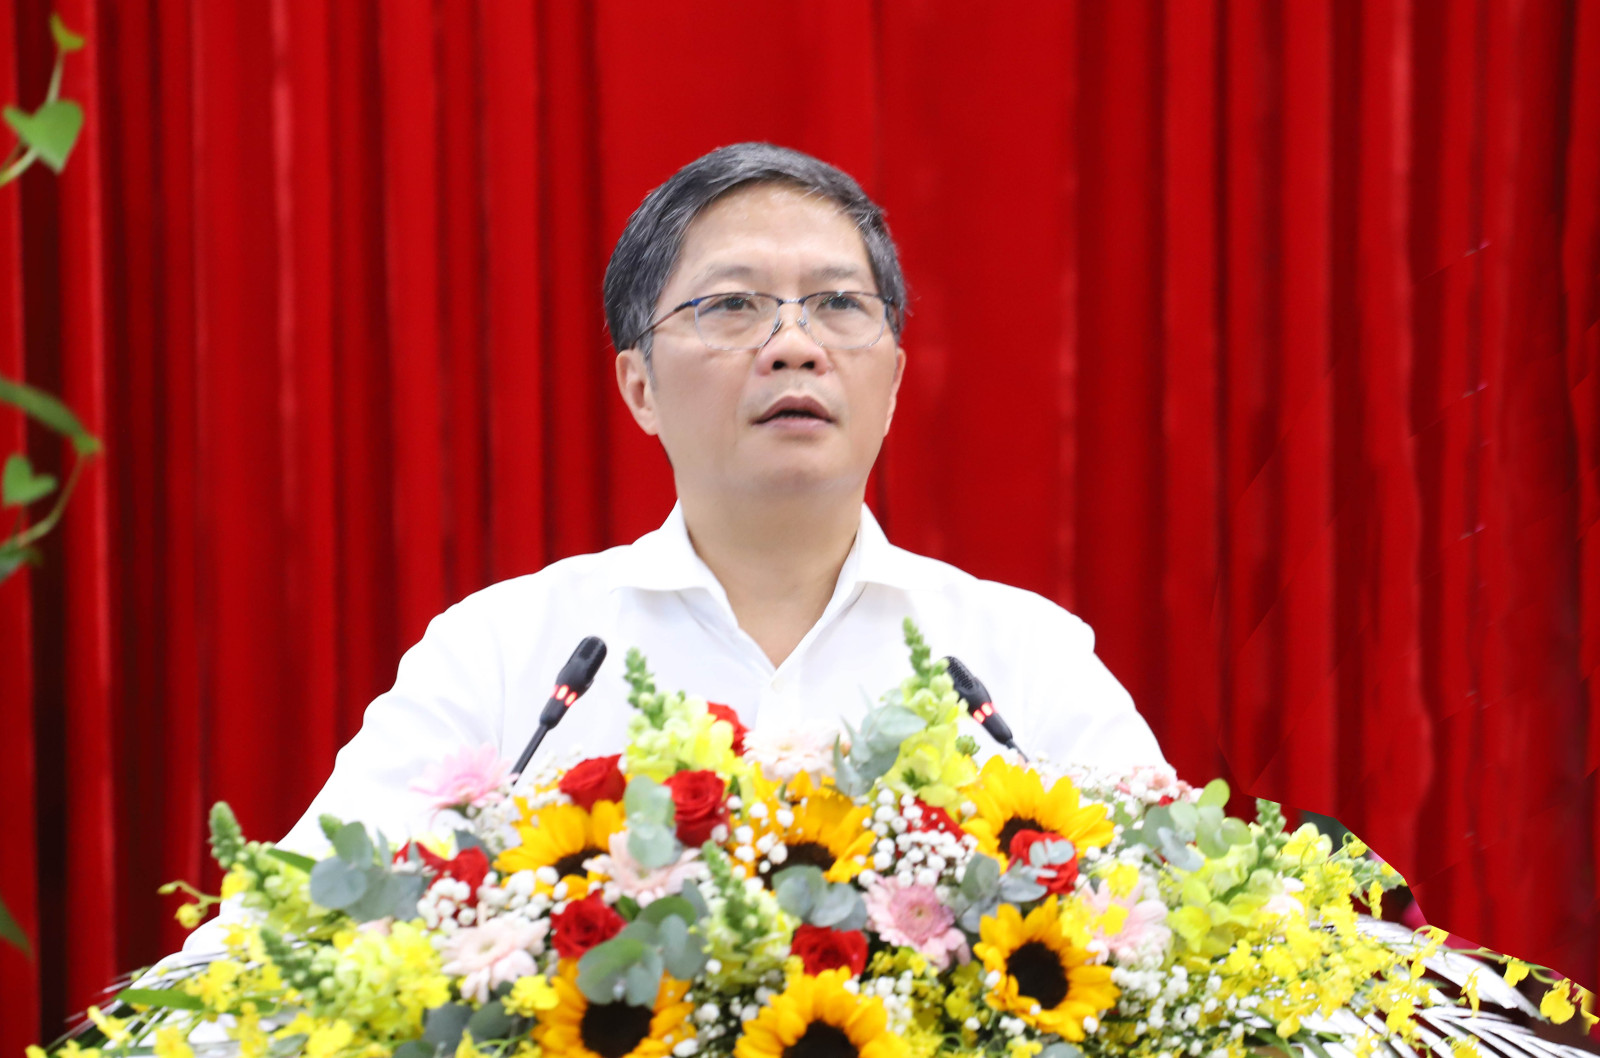 Đồng chí Trần Tuấn Anh - Ủy viên Bộ Chính trị, Trưởng Ban Kinh tế Trung ương phát biểu tại buổi làm việc.